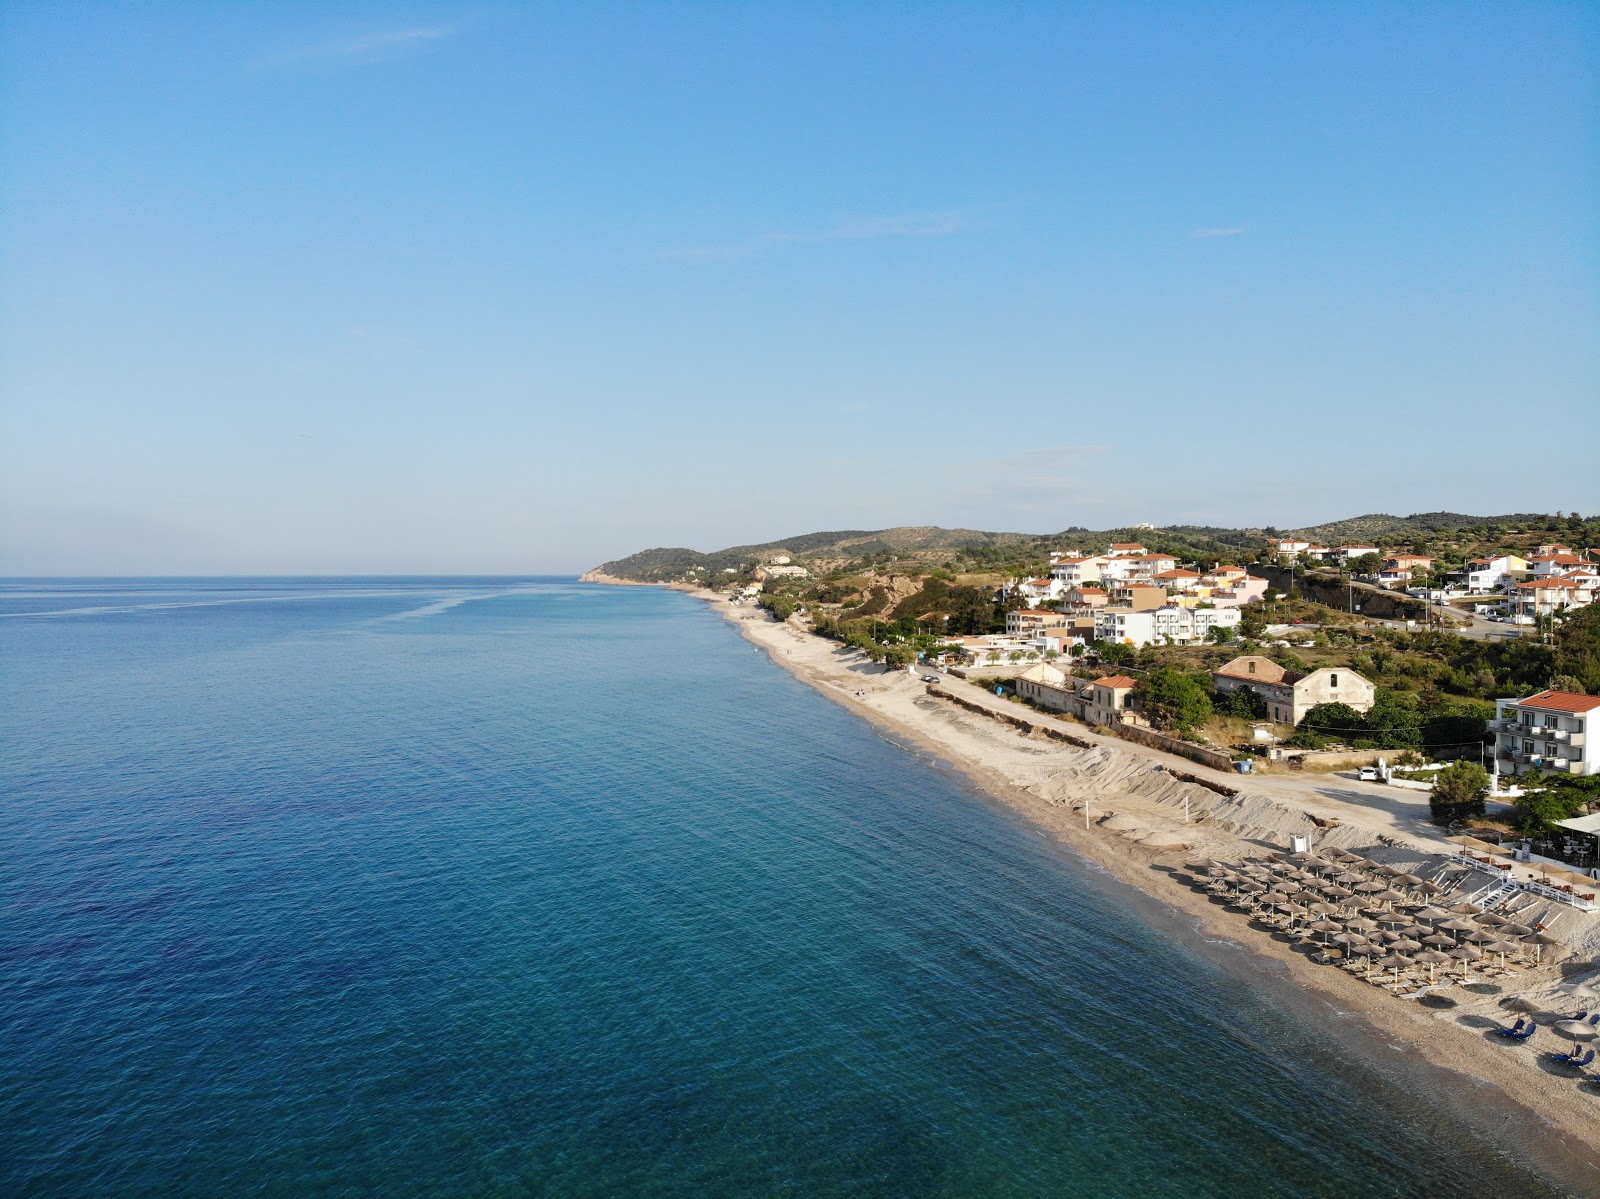 Fotografija Aegean beach priljubljeno mesto med poznavalci sprostitve